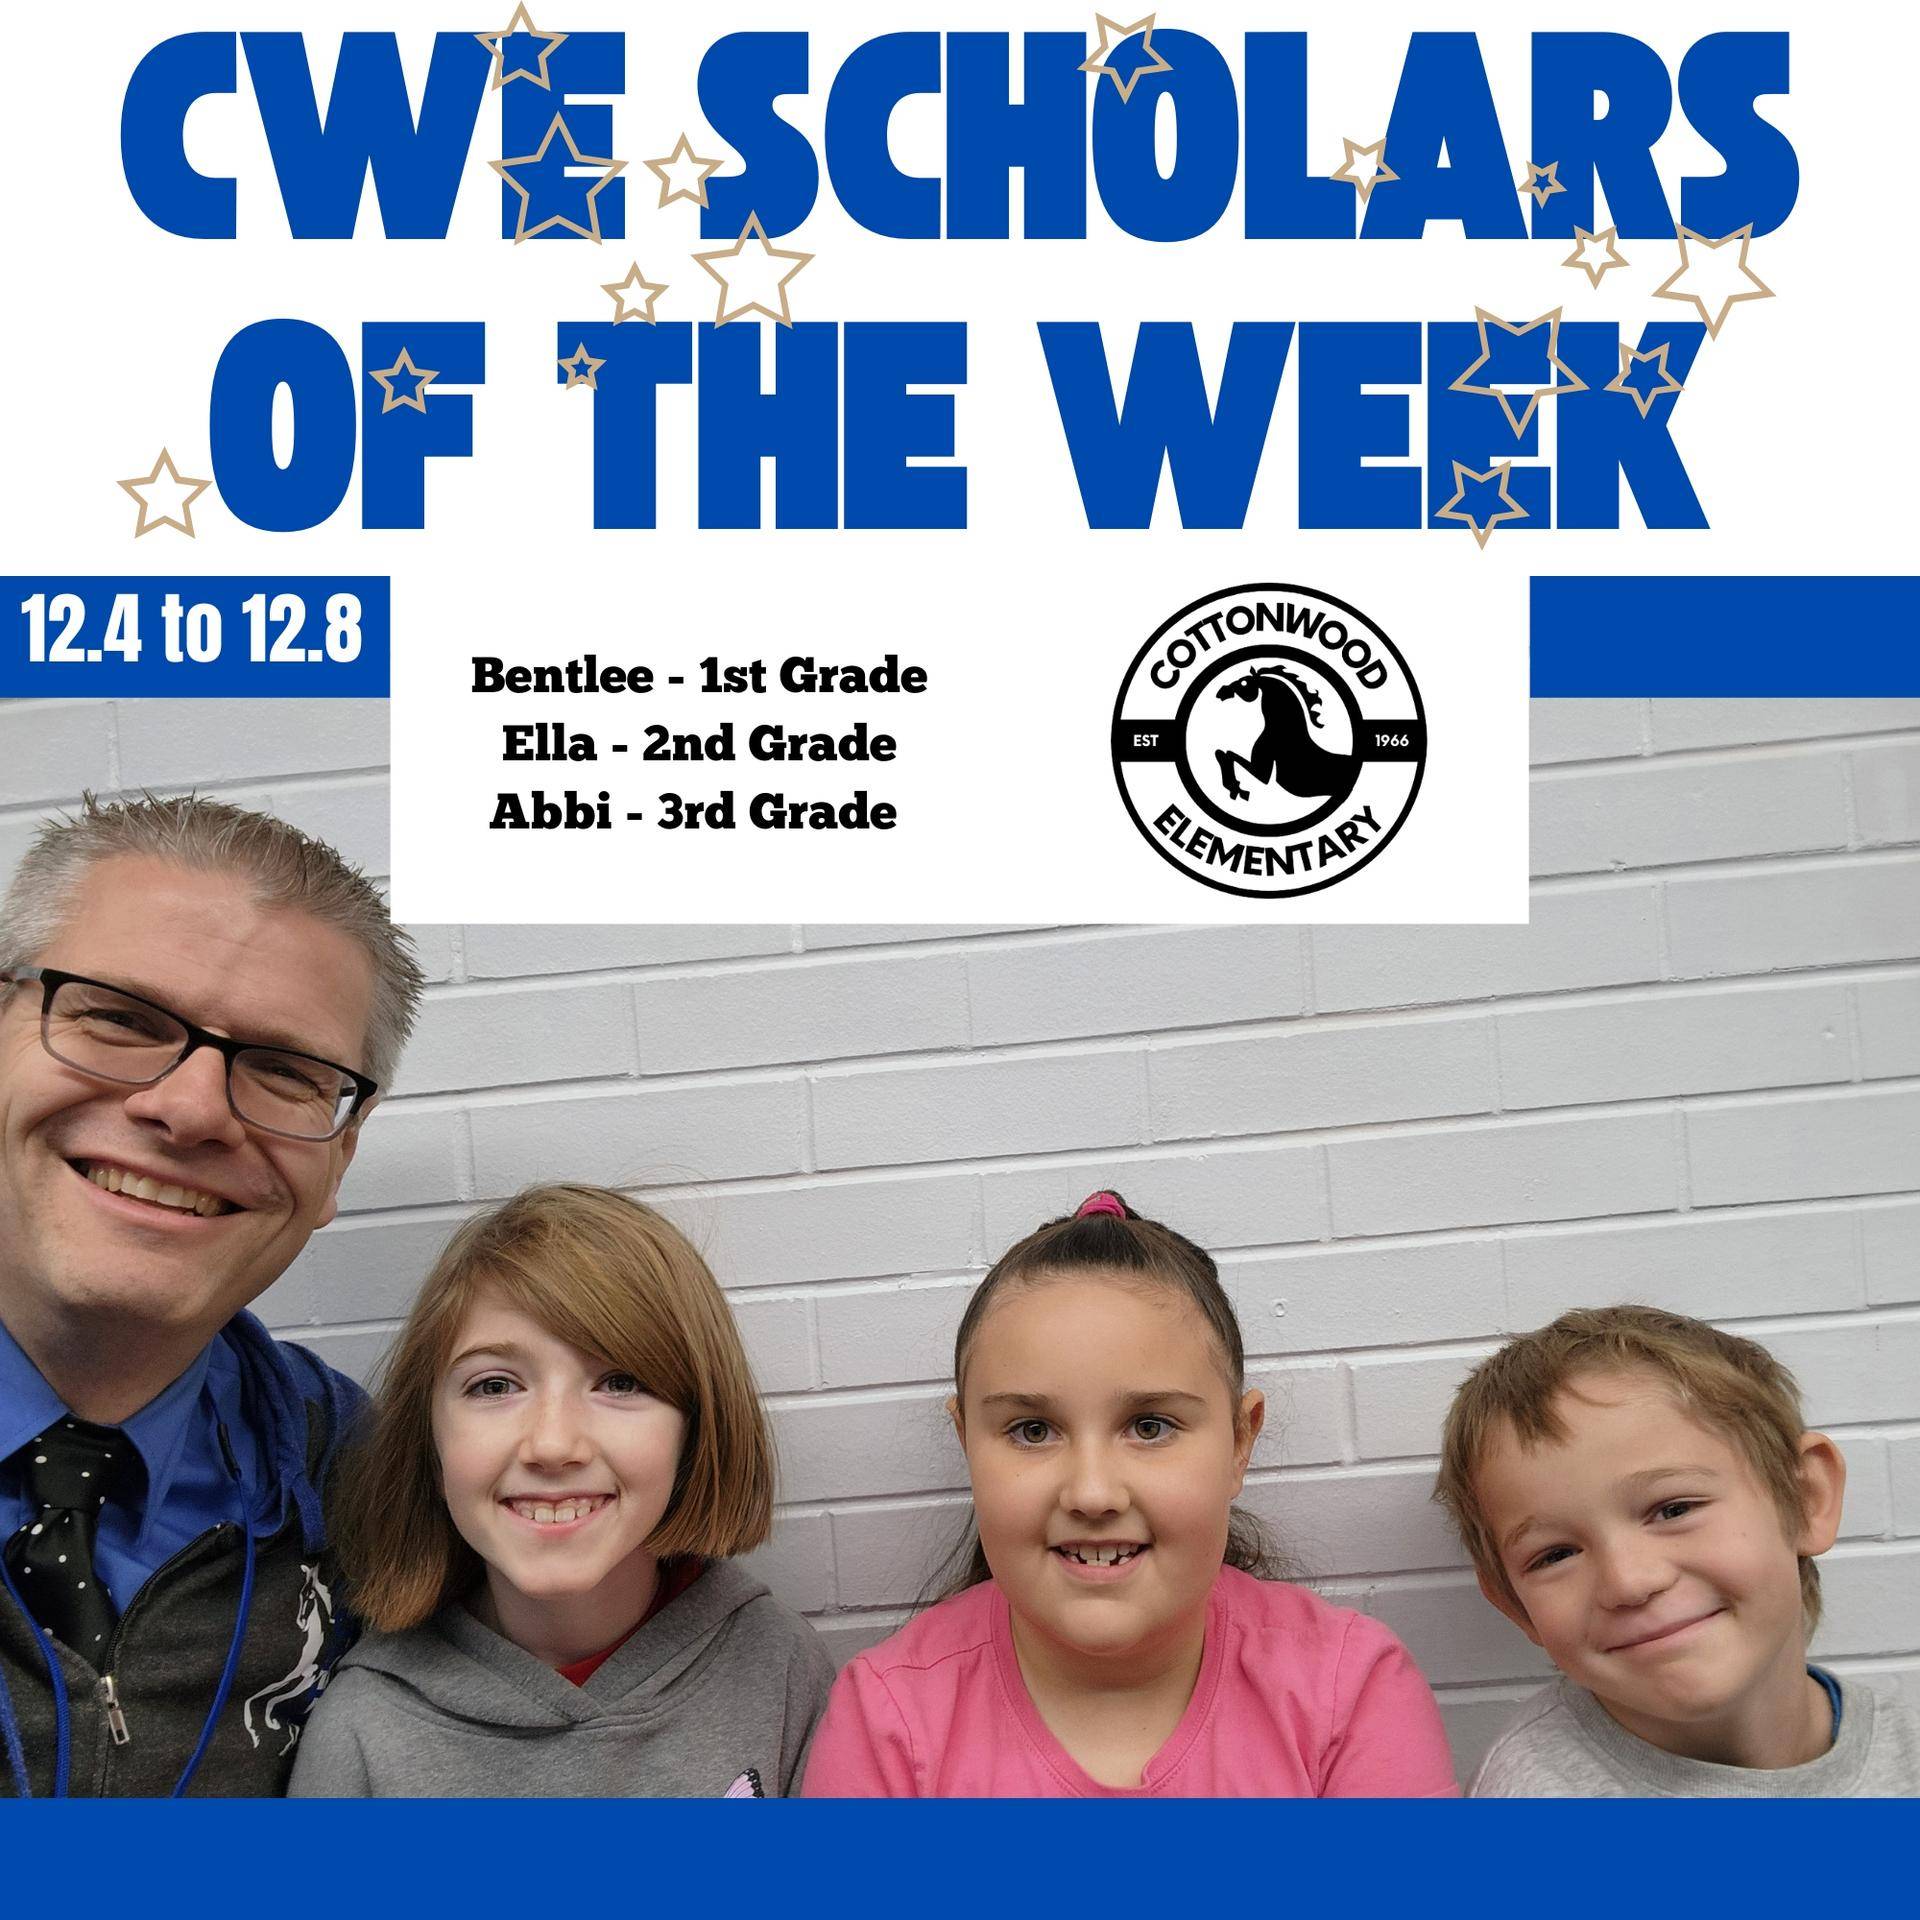 CWE-Scholars-of-the-Week-12.4-to-12.8.jpg